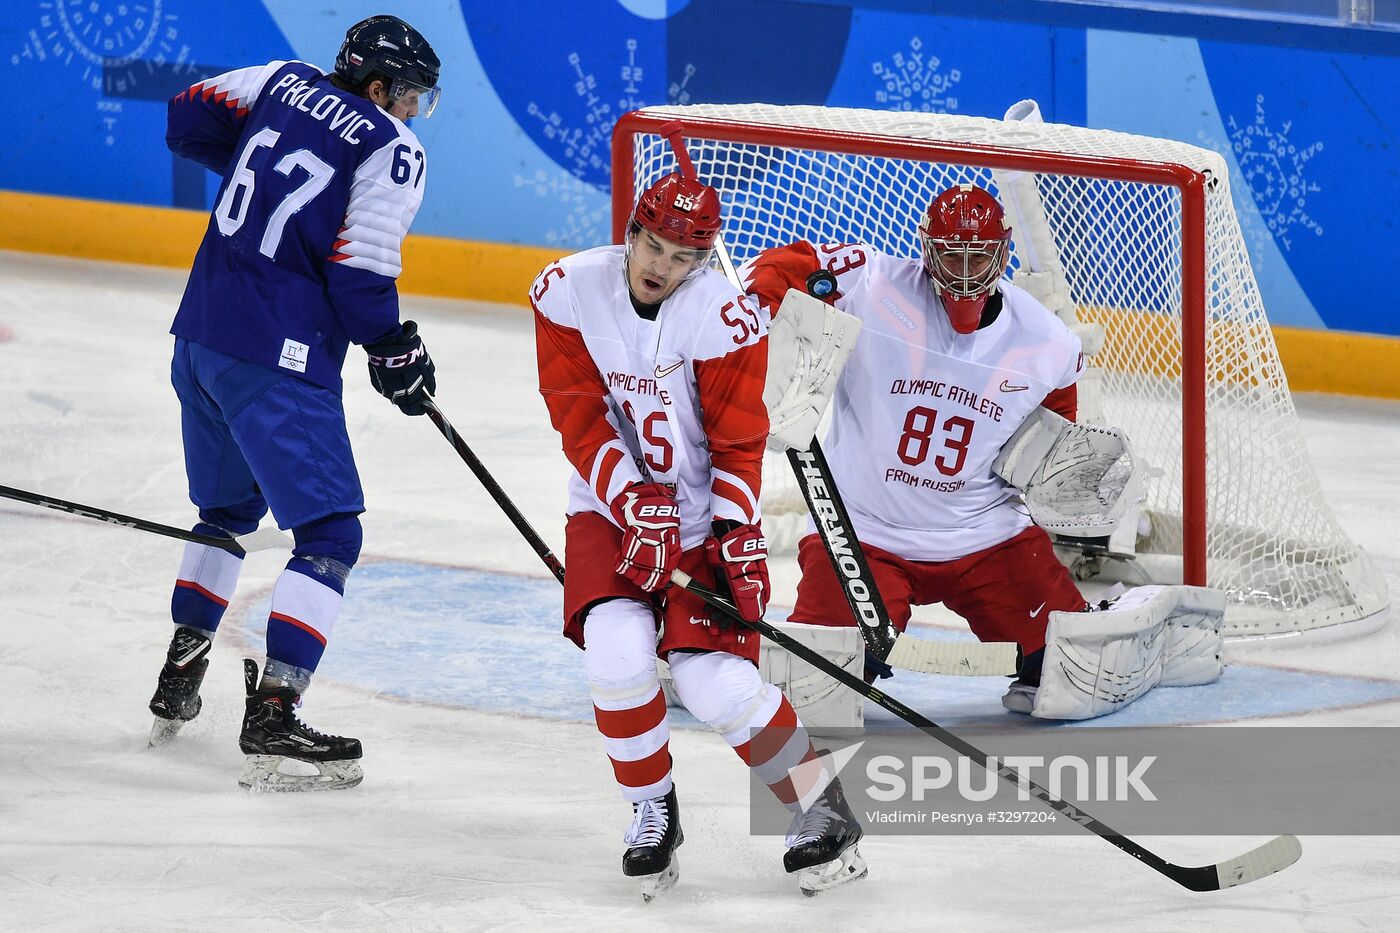 2018 Winter Olympics. Ice hockey. Men. Slovakia vs. Russia